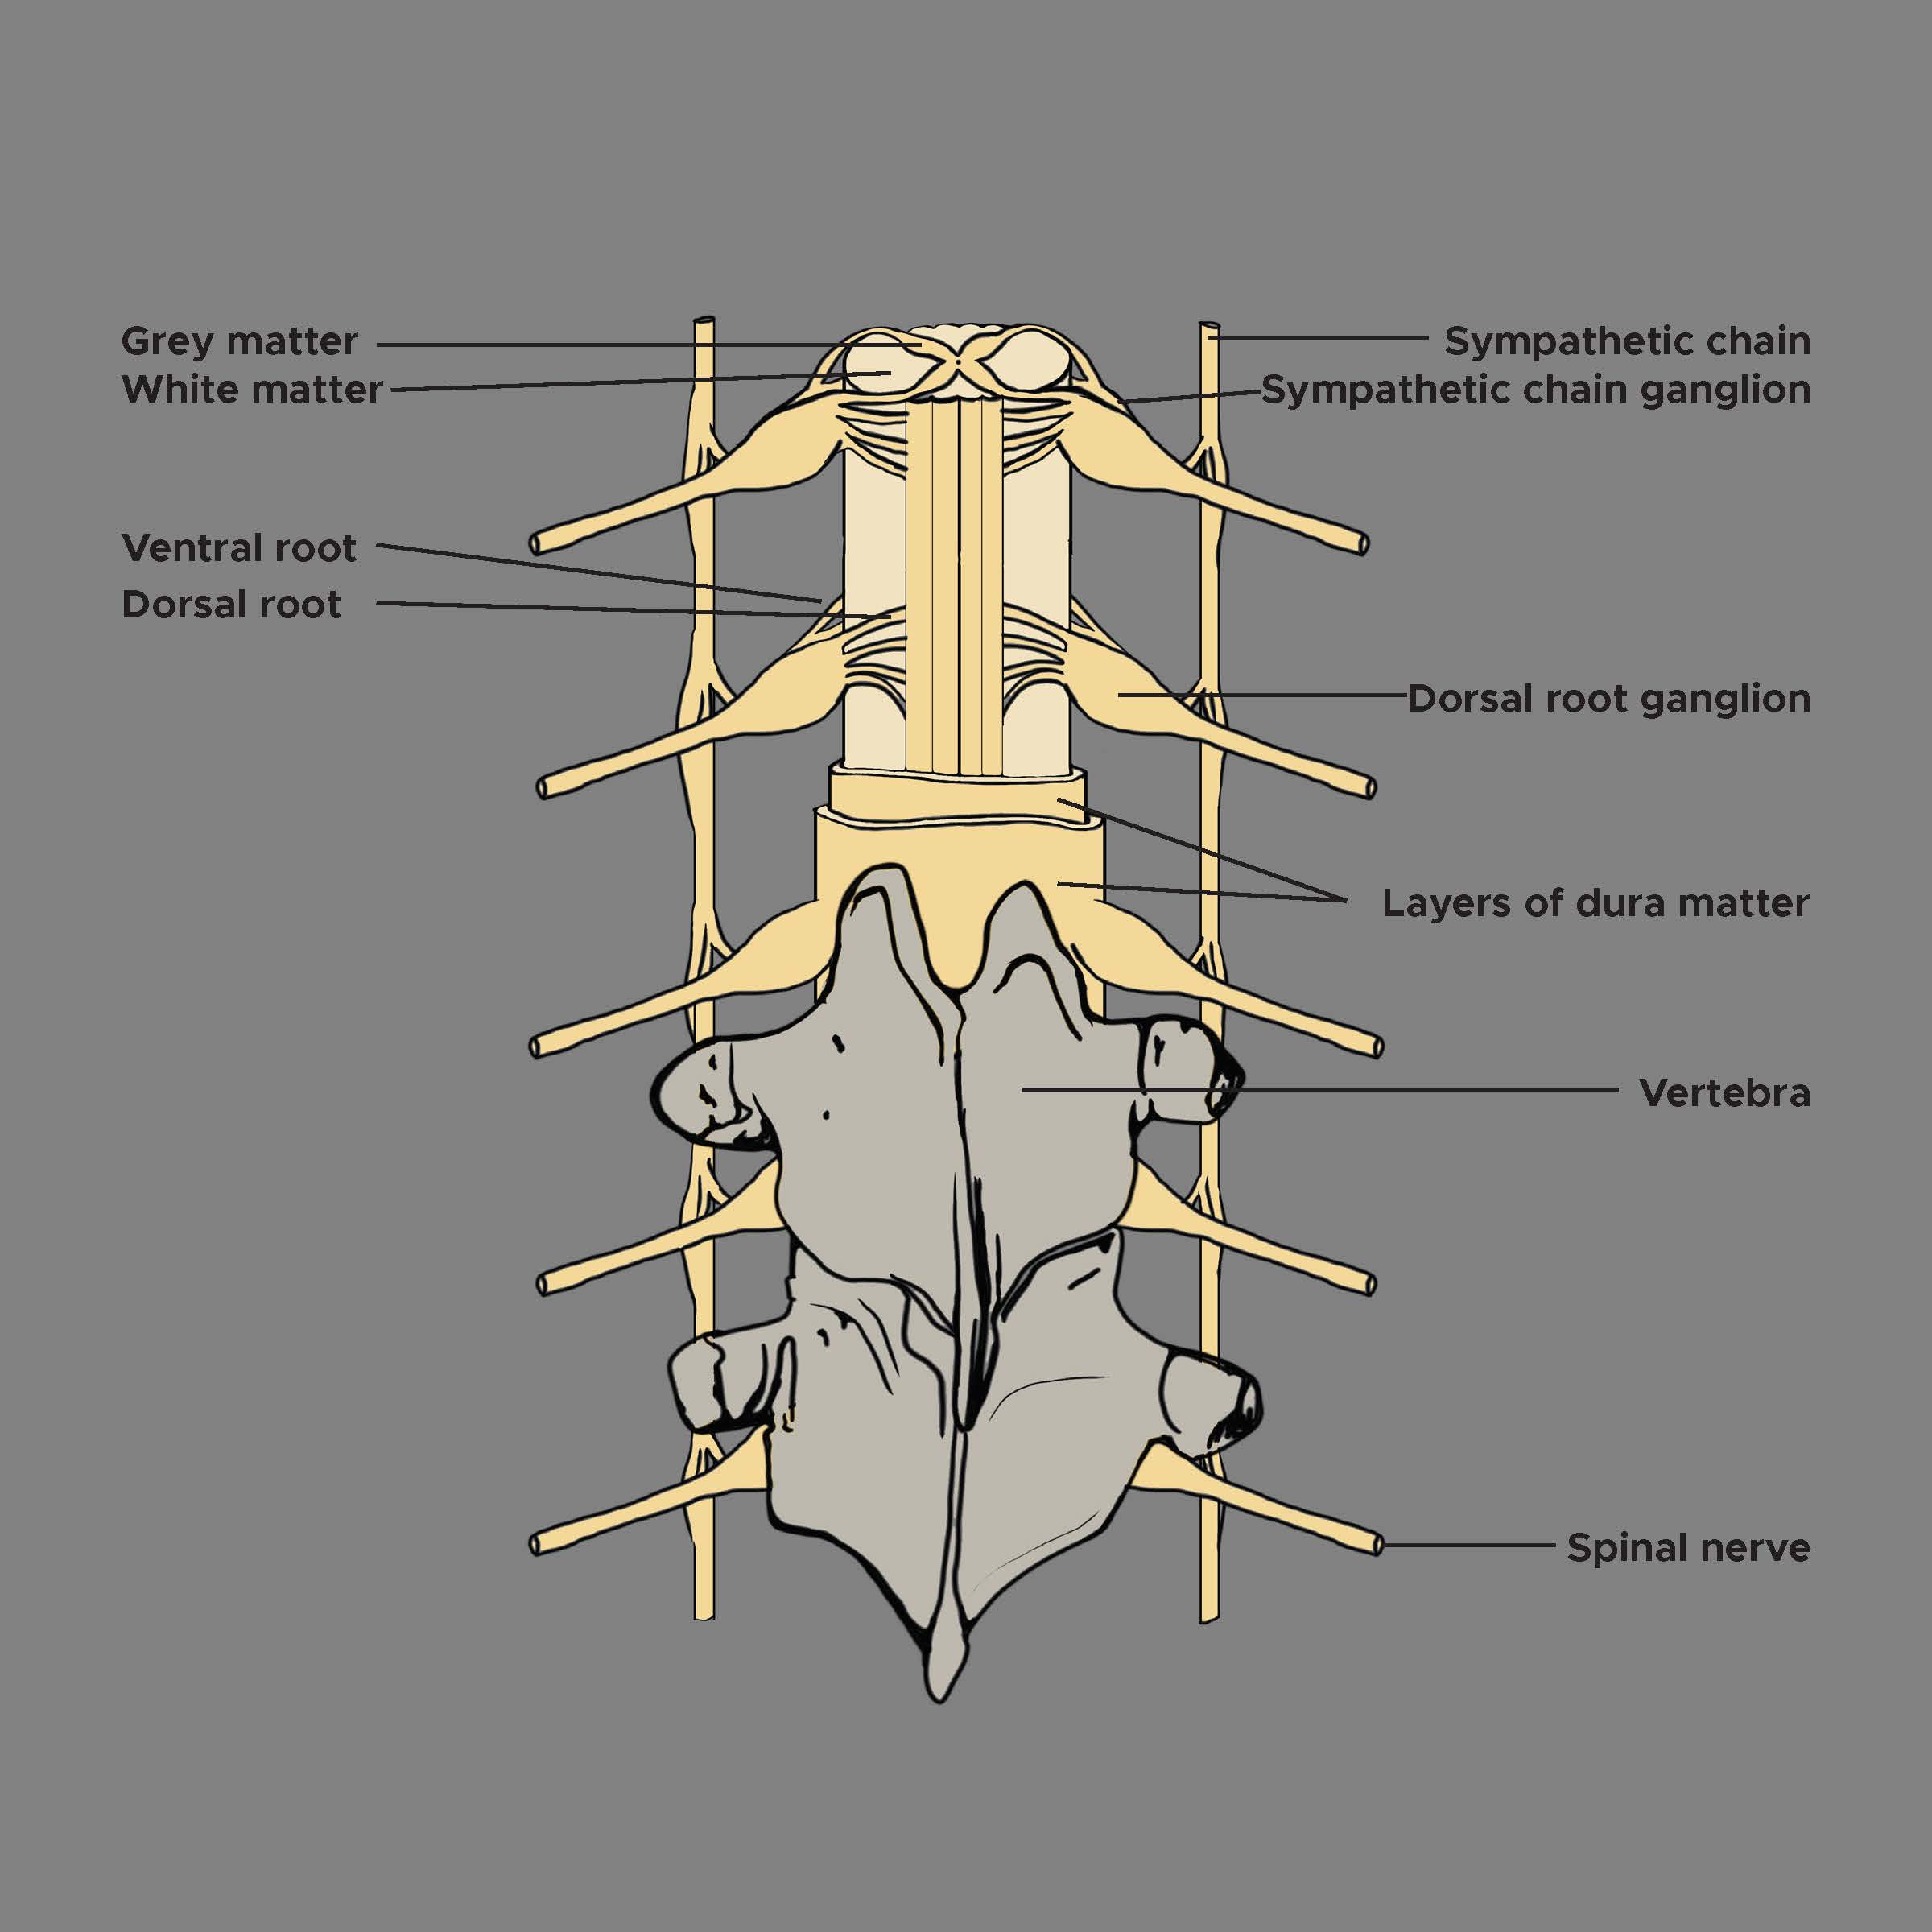 Dorsal root ganglion, vertebrae, grey and white matter